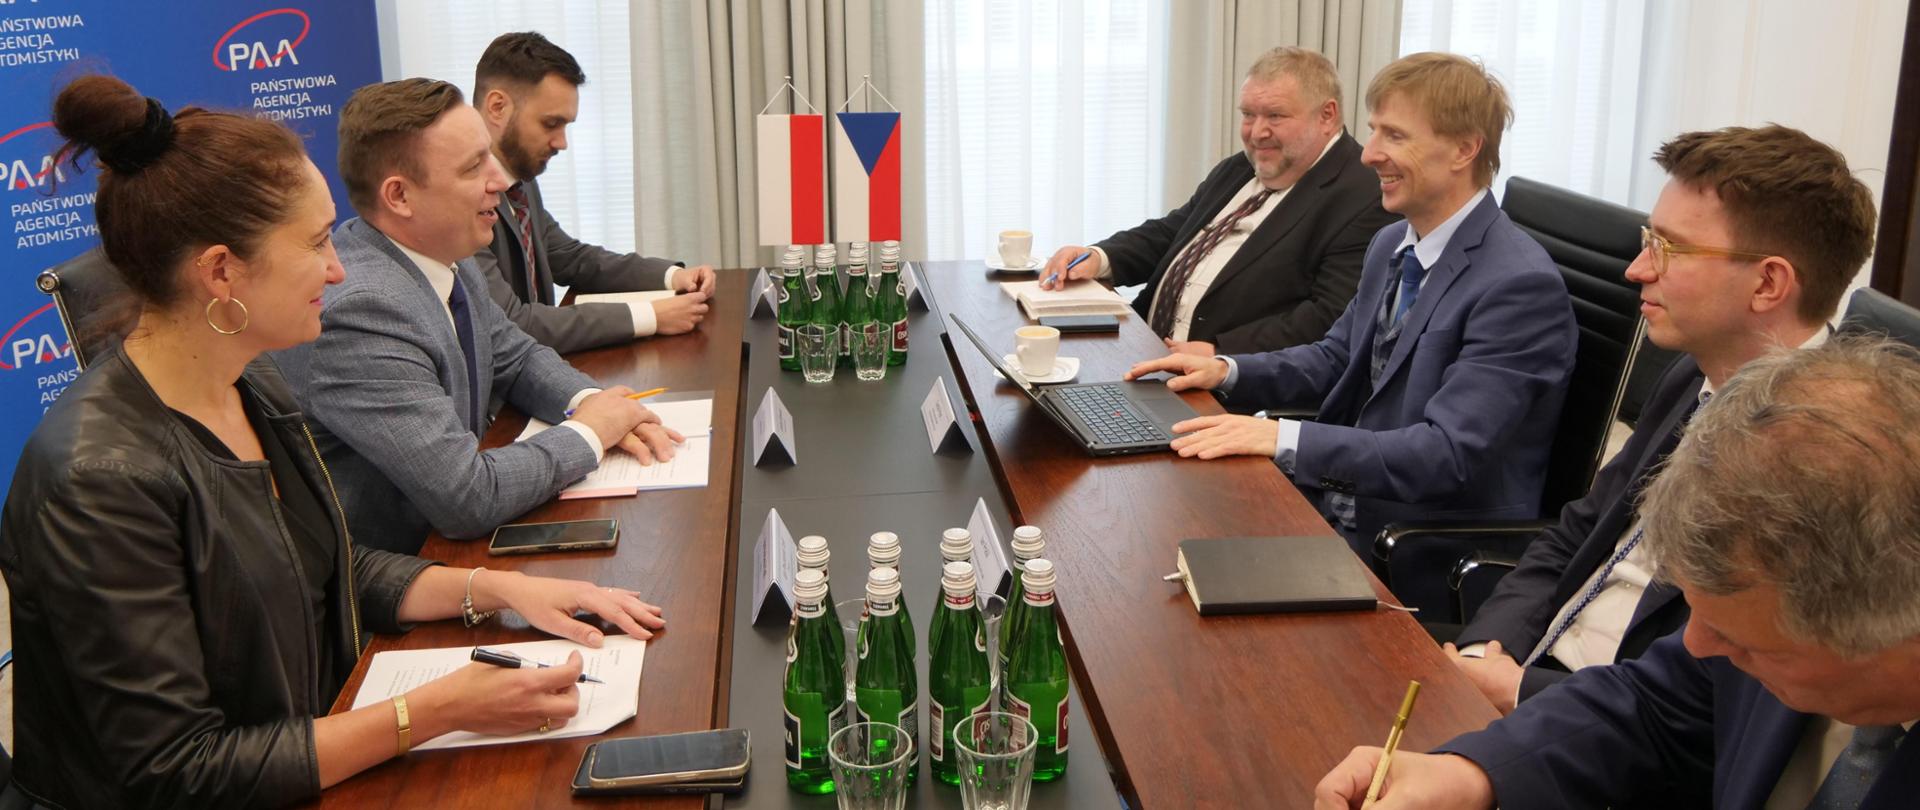 Spotkanie z przedstawicielami czeskiego Ministerstwa Przemysłu i Handlu. Uczestnicy spotkania siedzą przy stole.